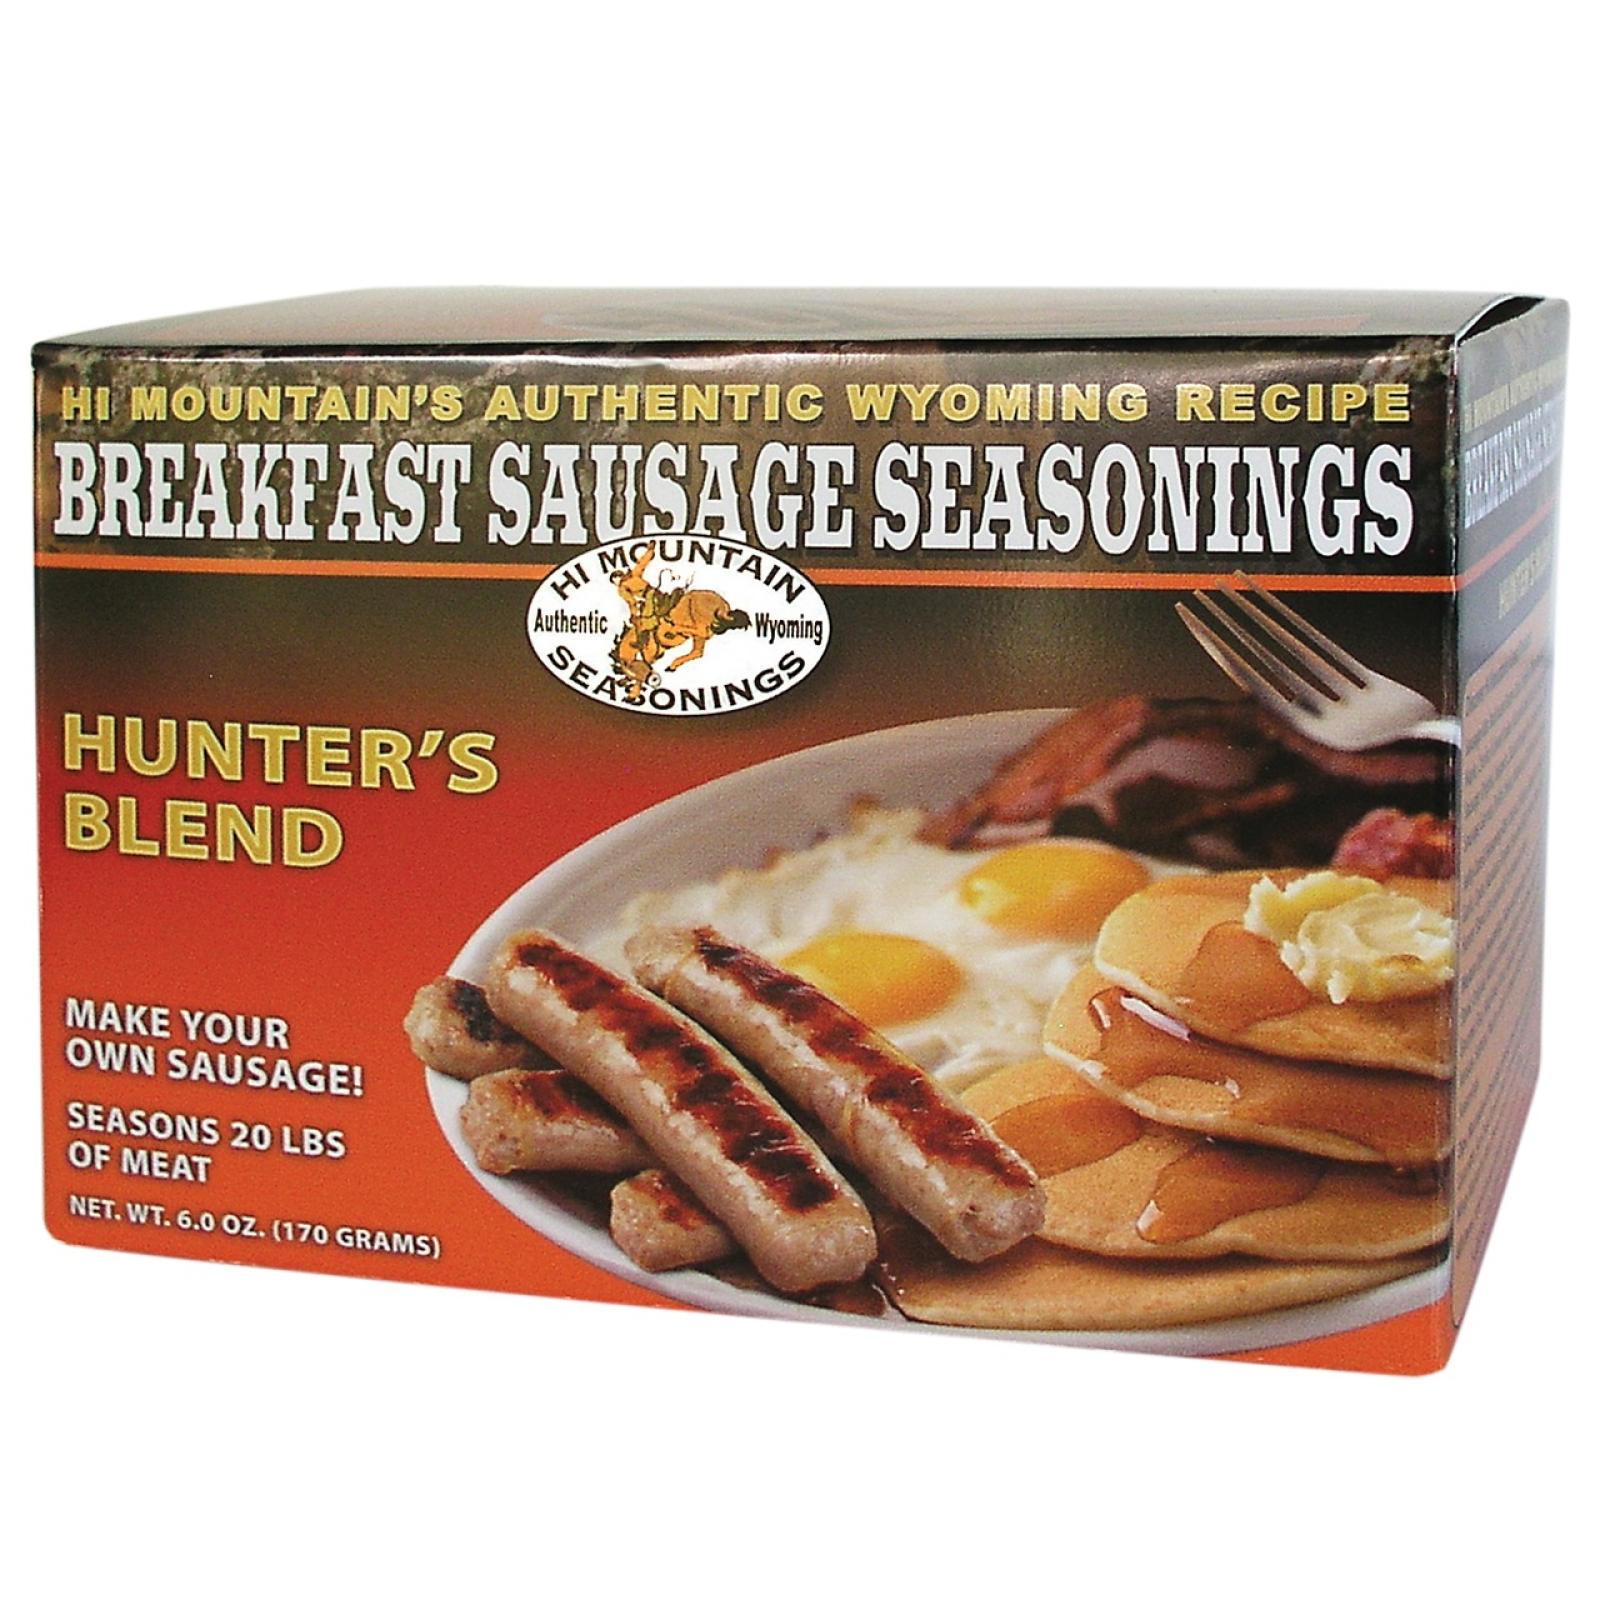 Hi Mountain Hunter's Blend Breakfast Sausage Seasoning